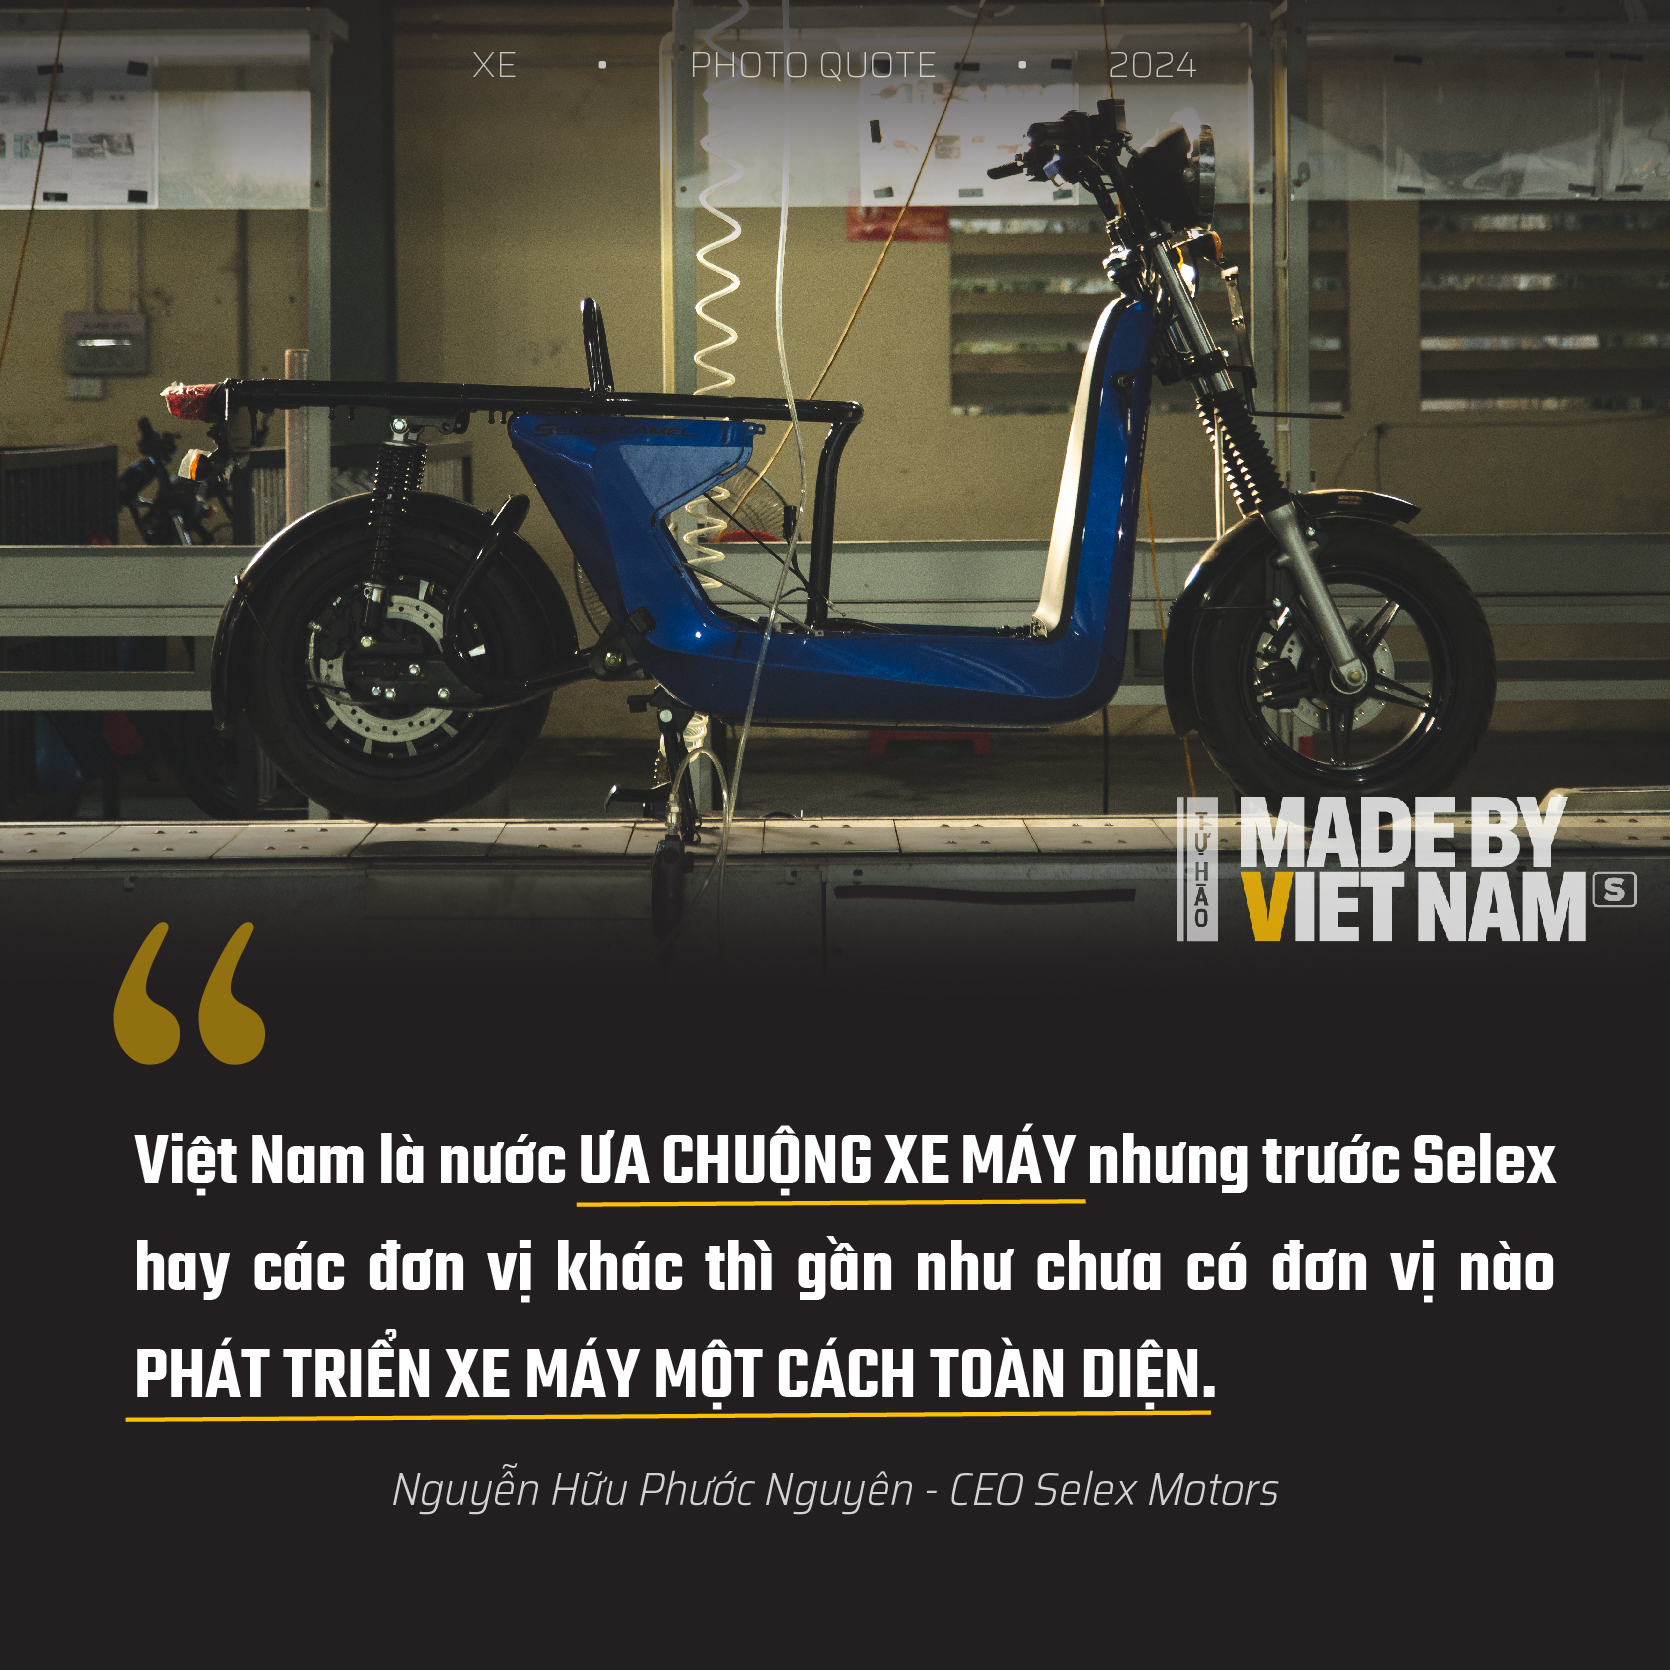 Mẫu xe máy Việt Nam làm chủ đến 80%: Mua chưa đầy một năm là đủ thu hồi vốn, thu nhập tăng 34%- Ảnh 5.